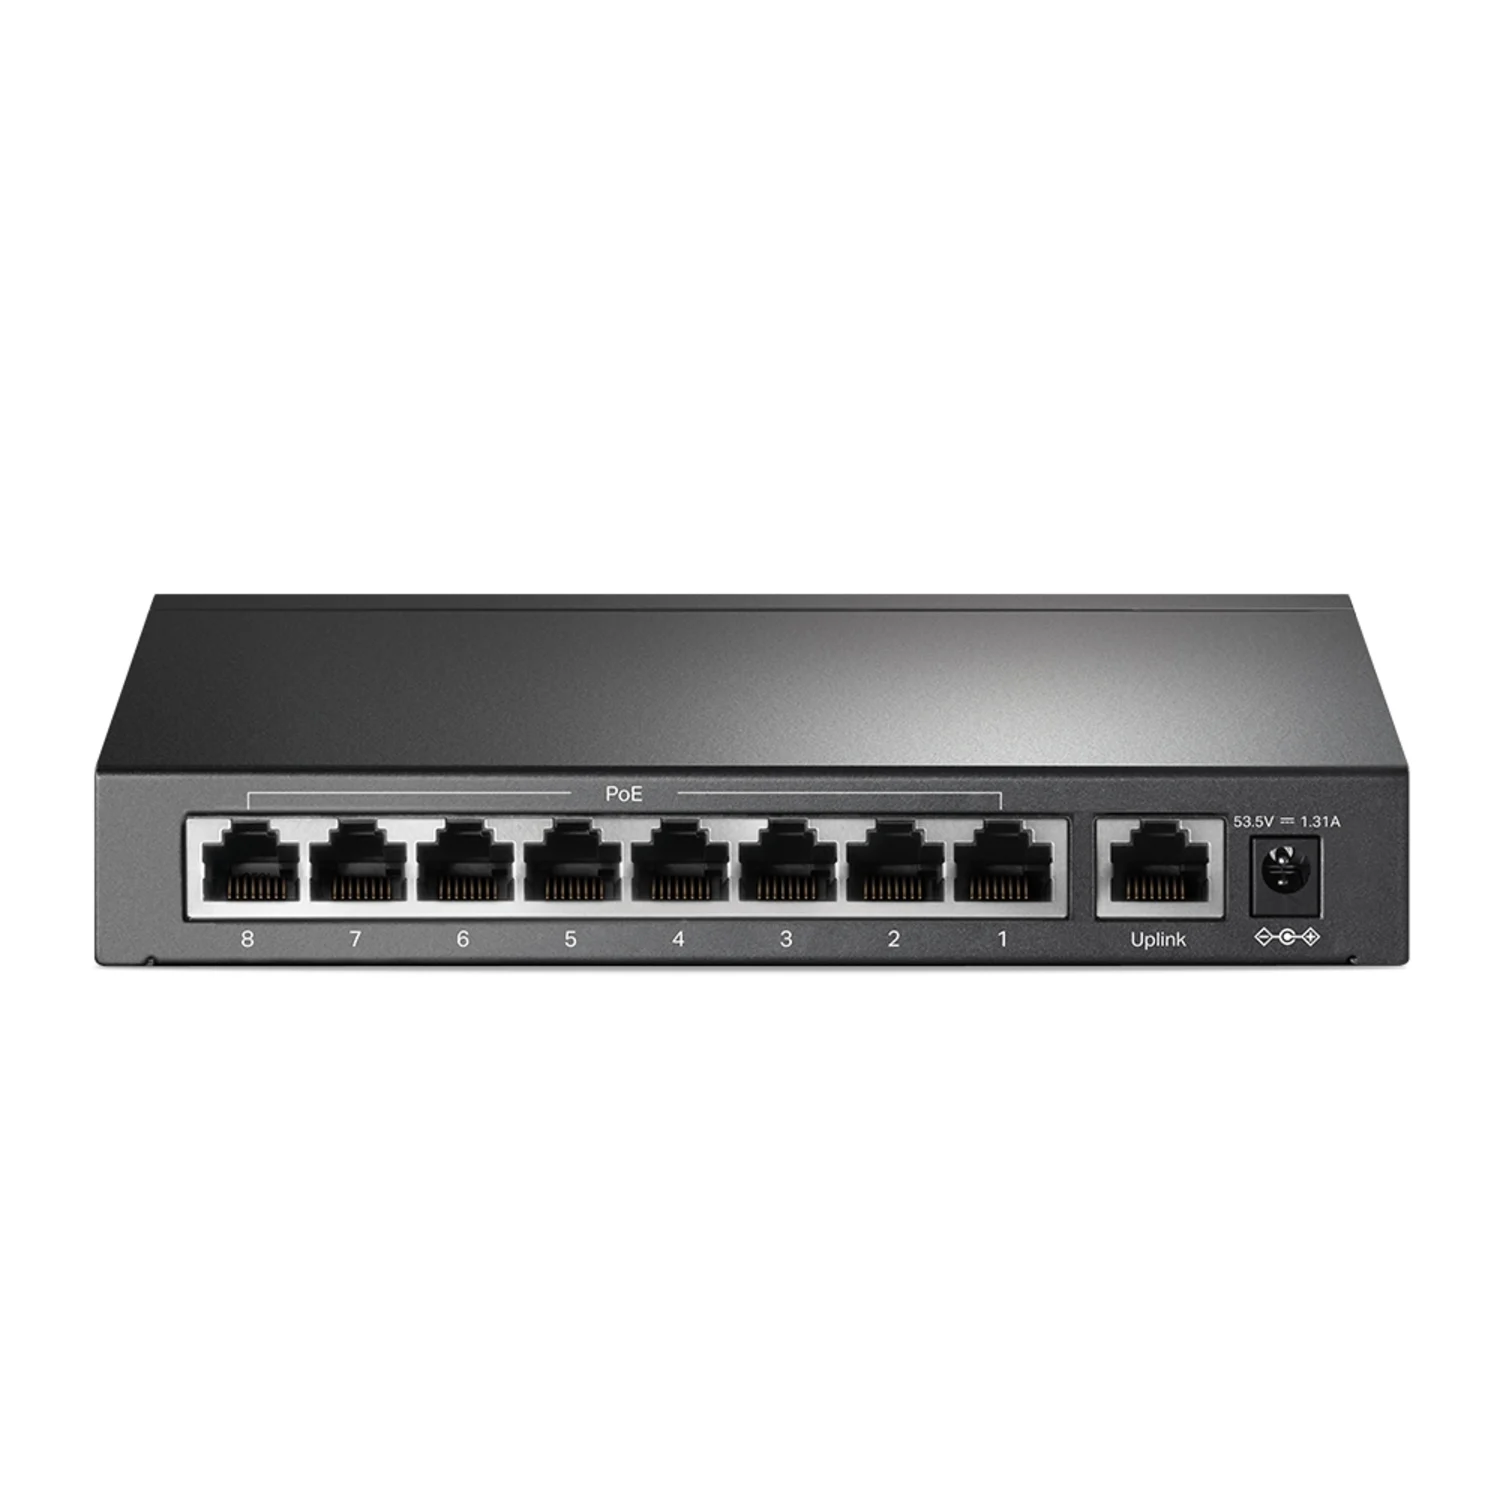 Hub switch TP-link 10/100 / 9 portas / POE+ - Preto (TL-SF1009P)